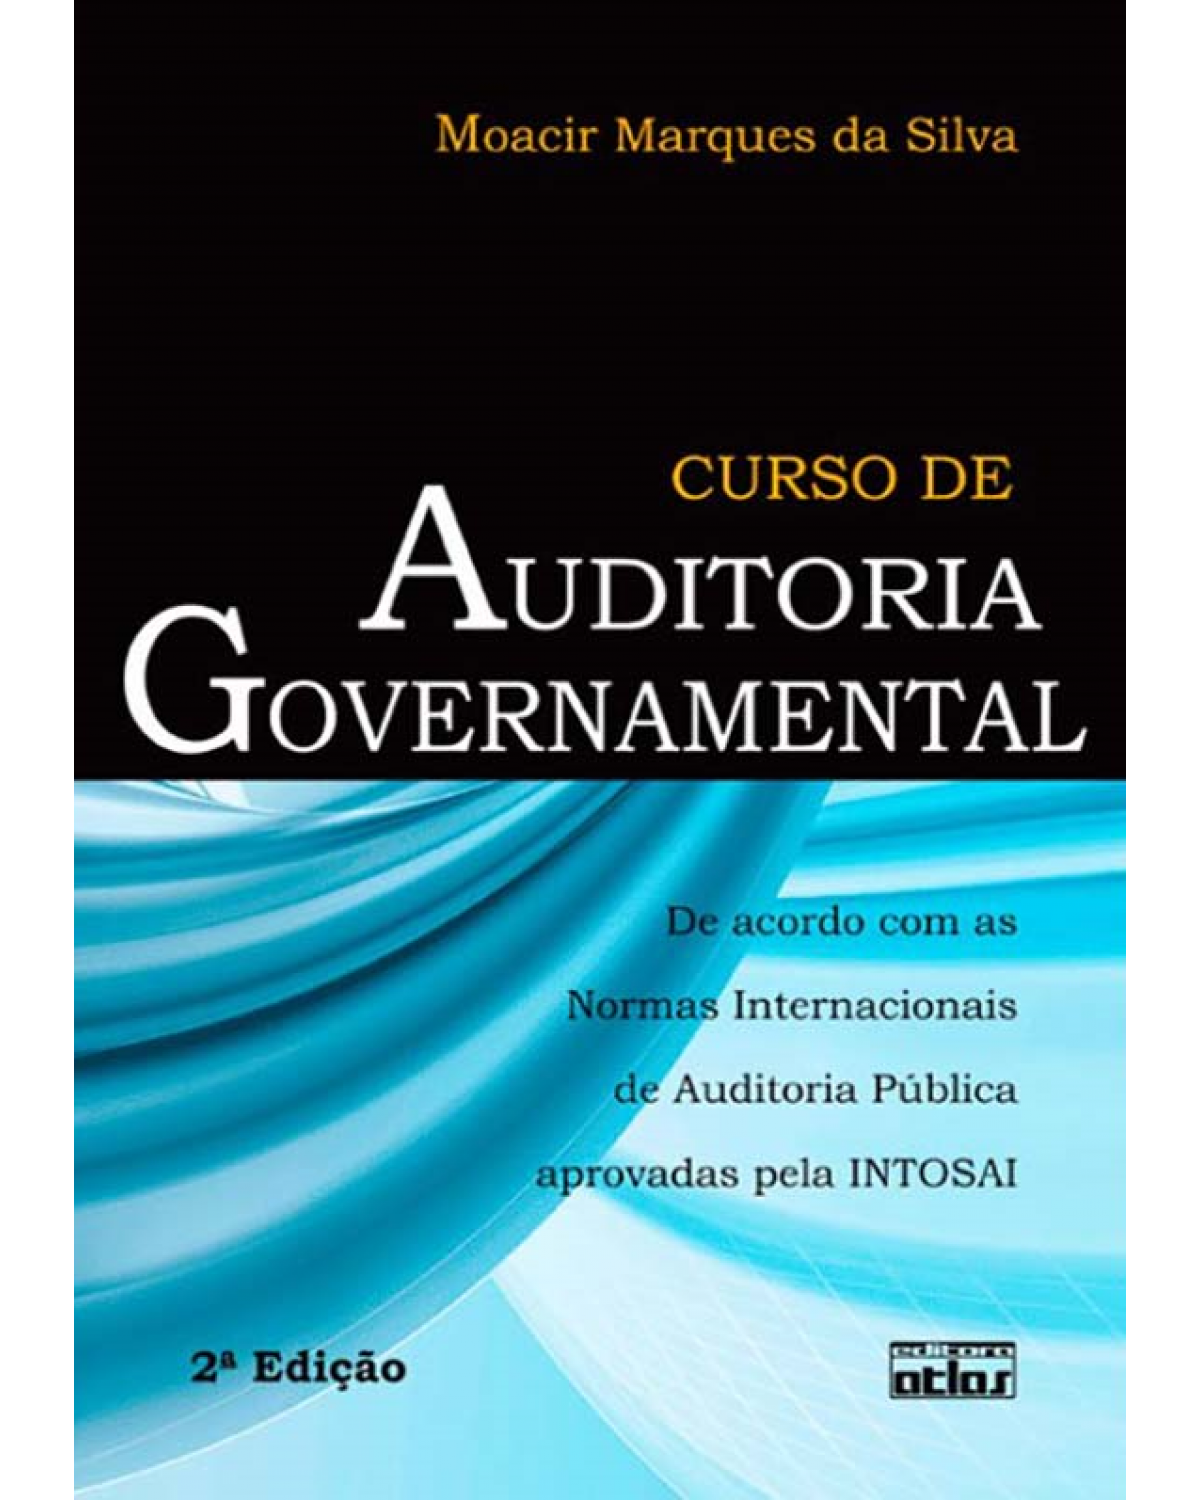 Curso de auditoria governamental - De acordo com as normas internacionais auditoria pública aprovadas pela INTOSAI - 2ª Edição | 2012